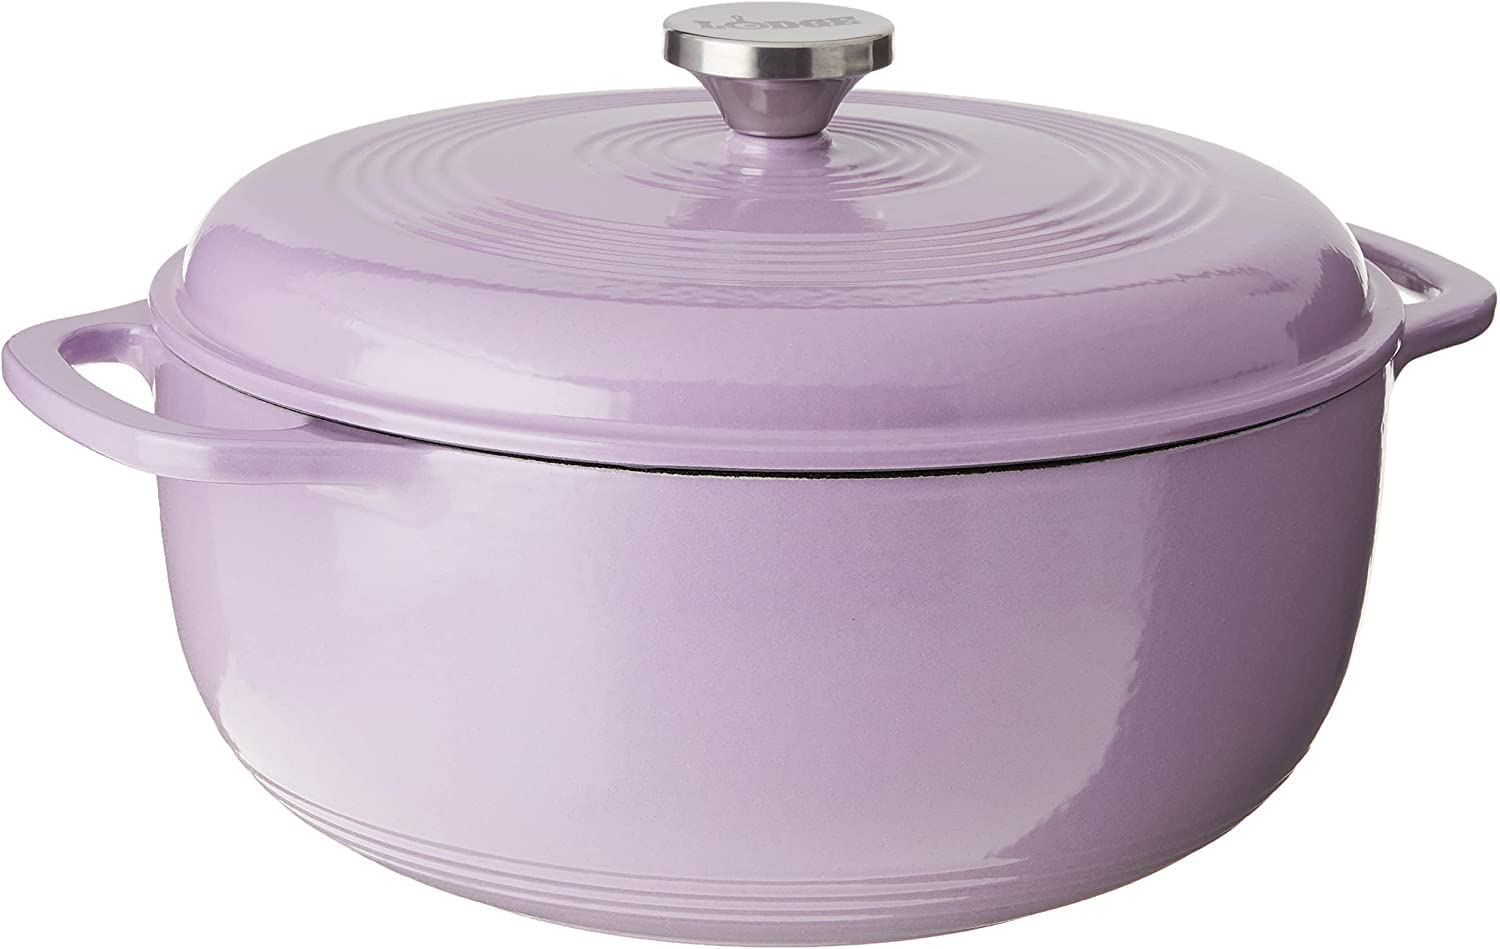 violet Dutch oven